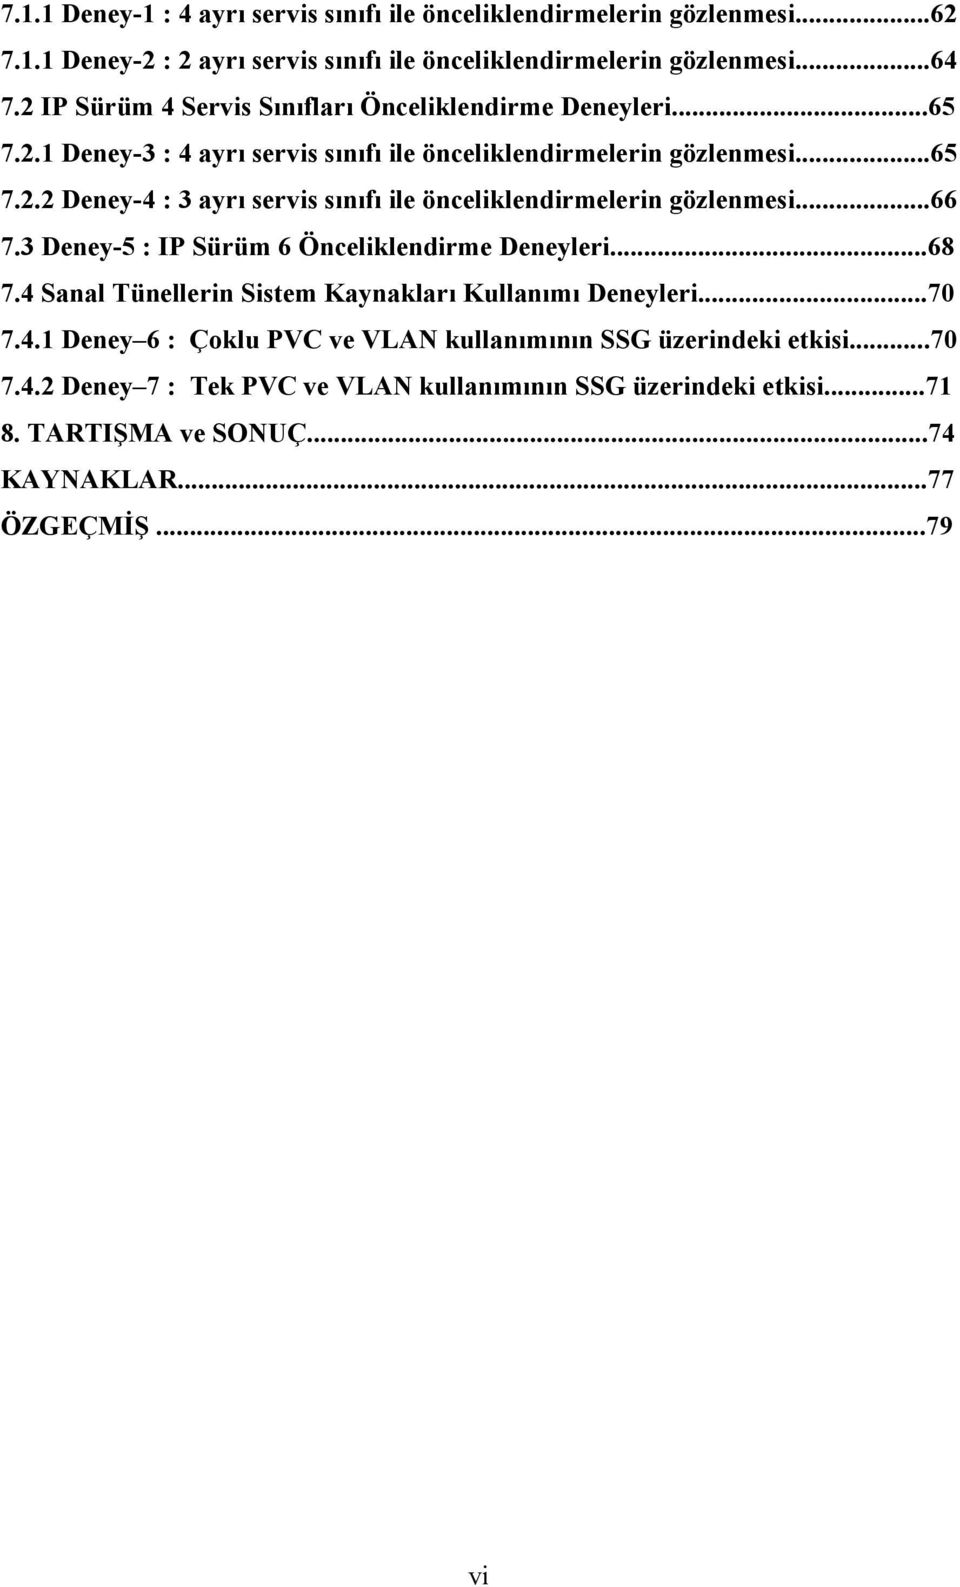 ..66 7.3 Deney-5 : IP Sürüm 6 Önceliklendirme Deneyleri...68 7.4 Sanal Tünellerin Sistem Kaynakları Kullanımı Deneyleri...70 7.4.1 Deney 6 : Çoklu PVC ve VLAN kullanımının SSG üzerindeki etkisi.